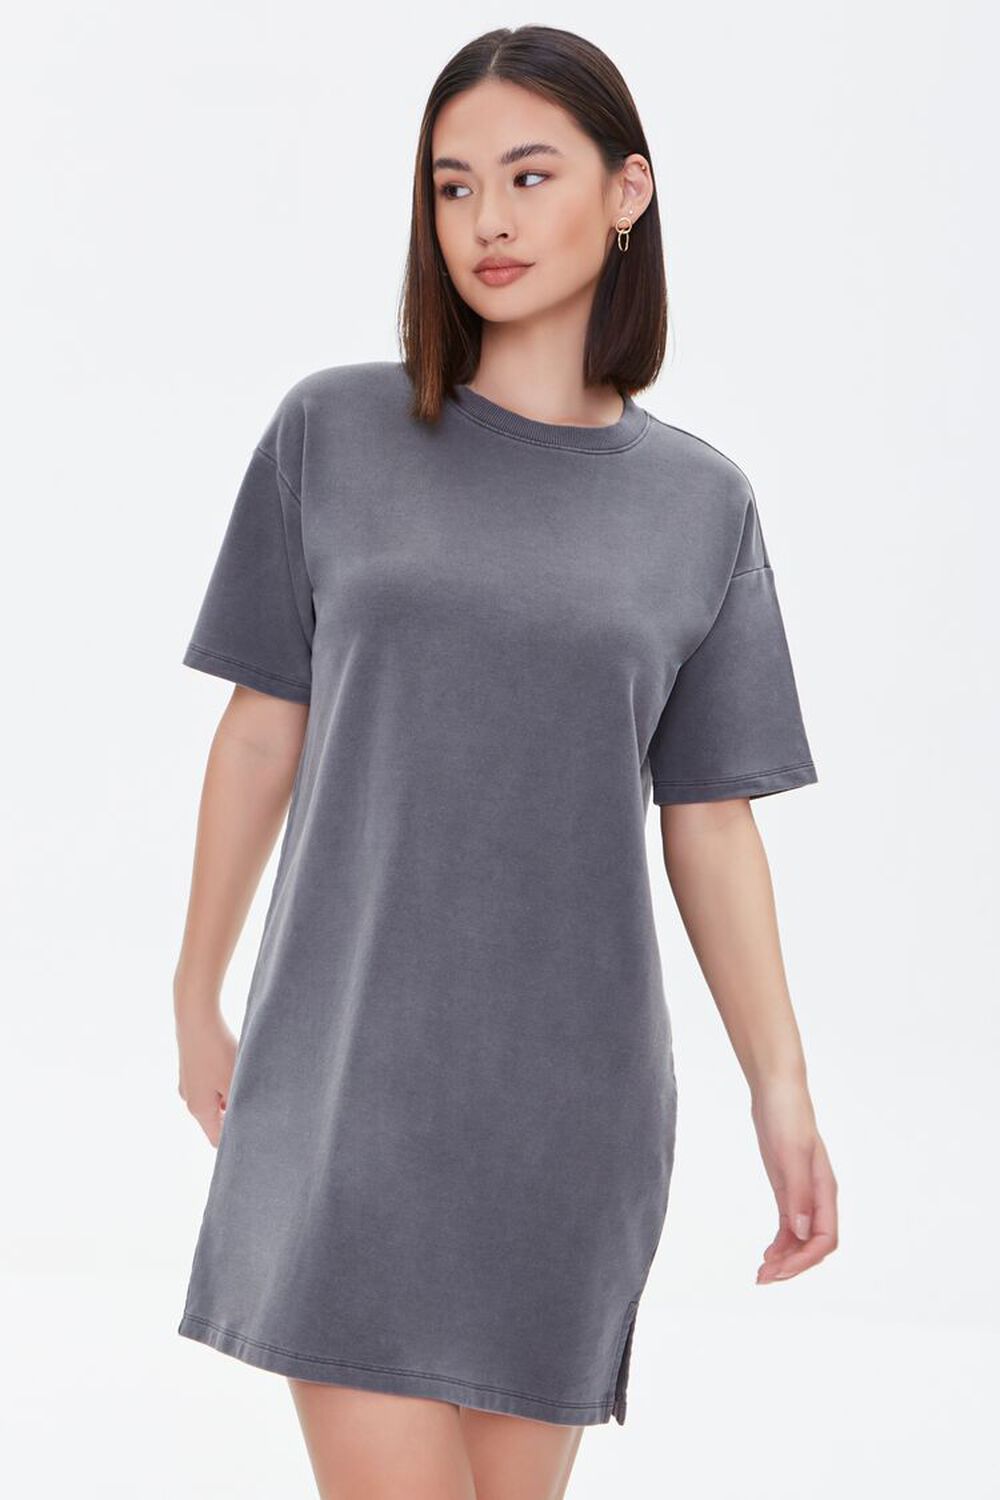 GREY Mineral Wash T-Shirt Dress, image 1